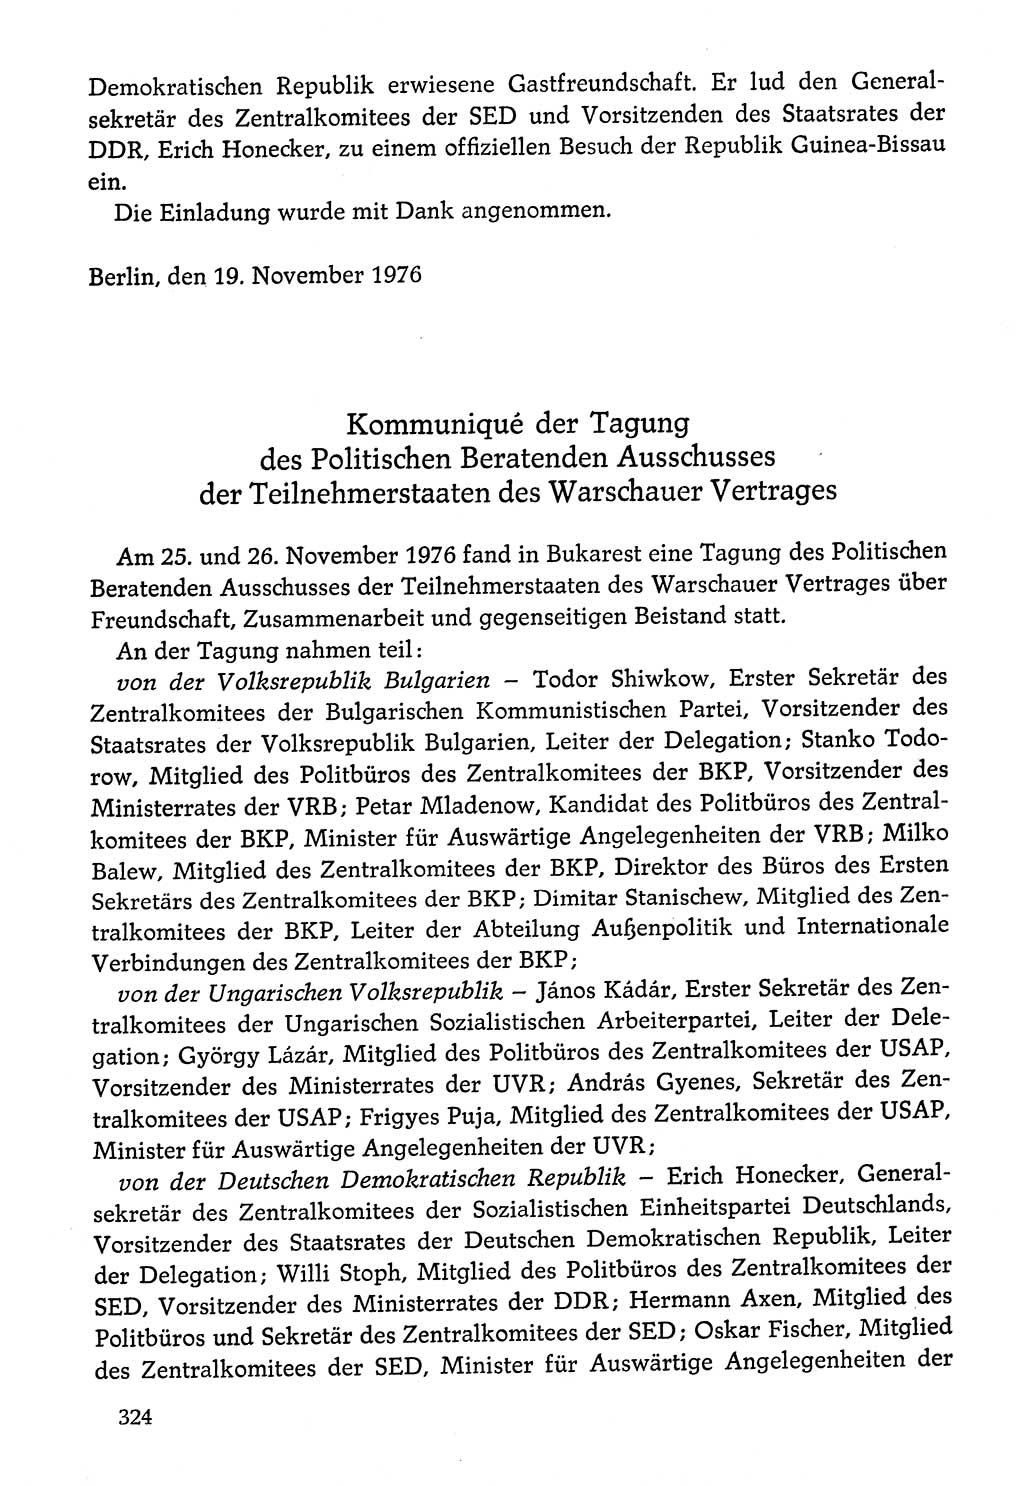 Dokumente der Sozialistischen Einheitspartei Deutschlands (SED) [Deutsche Demokratische Republik (DDR)] 1976-1977, Seite 324 (Dok. SED DDR 1976-1977, S. 324)